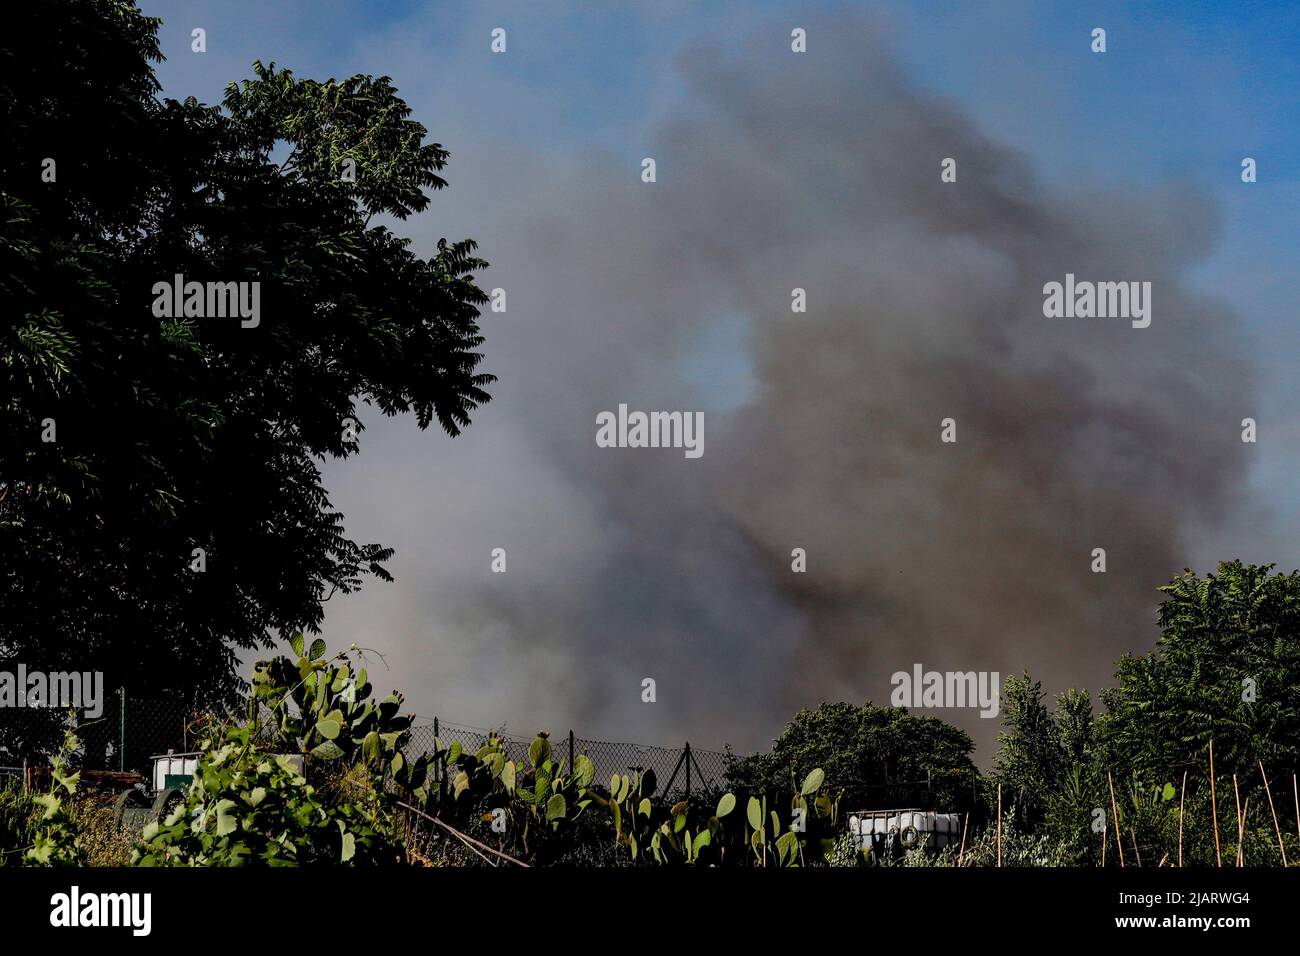 Un vasto incendium oggi pomeriggio ha interessato un area verde di proprietà della TAV in zona Prenestino. Oltre a bruciare le sterpaglie sono finiti en fumo molti materiali di risulta Foto de stock